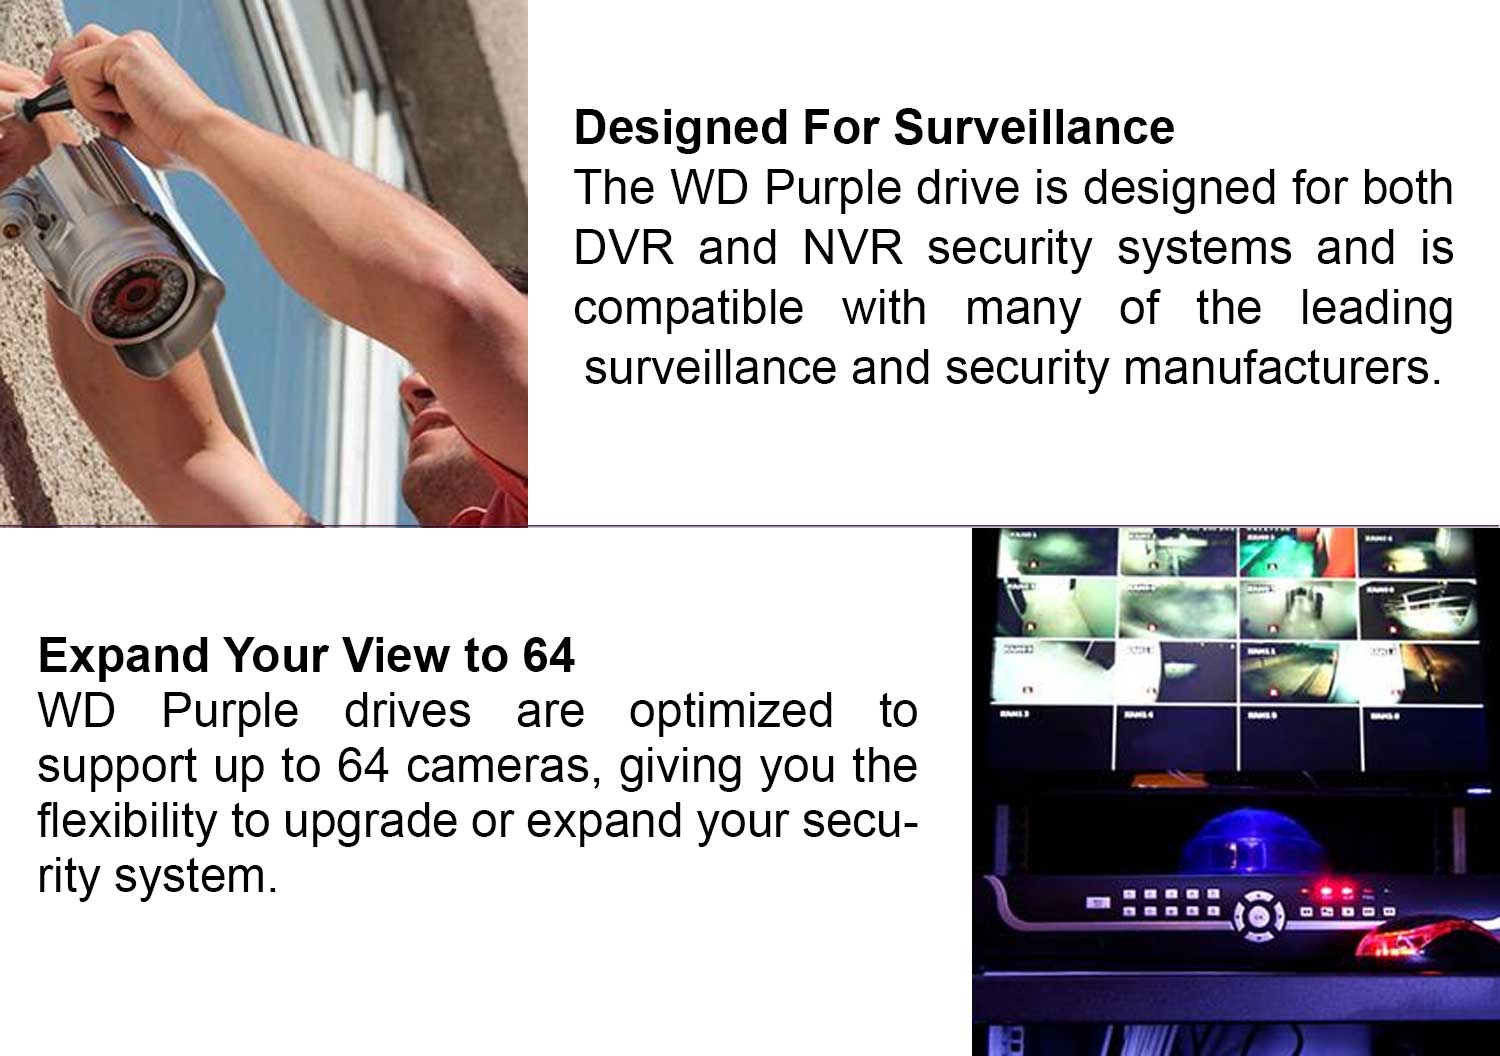 Western Digital 6TB Purple 3.5" Surveillance Hard Drive - WD63PURZ